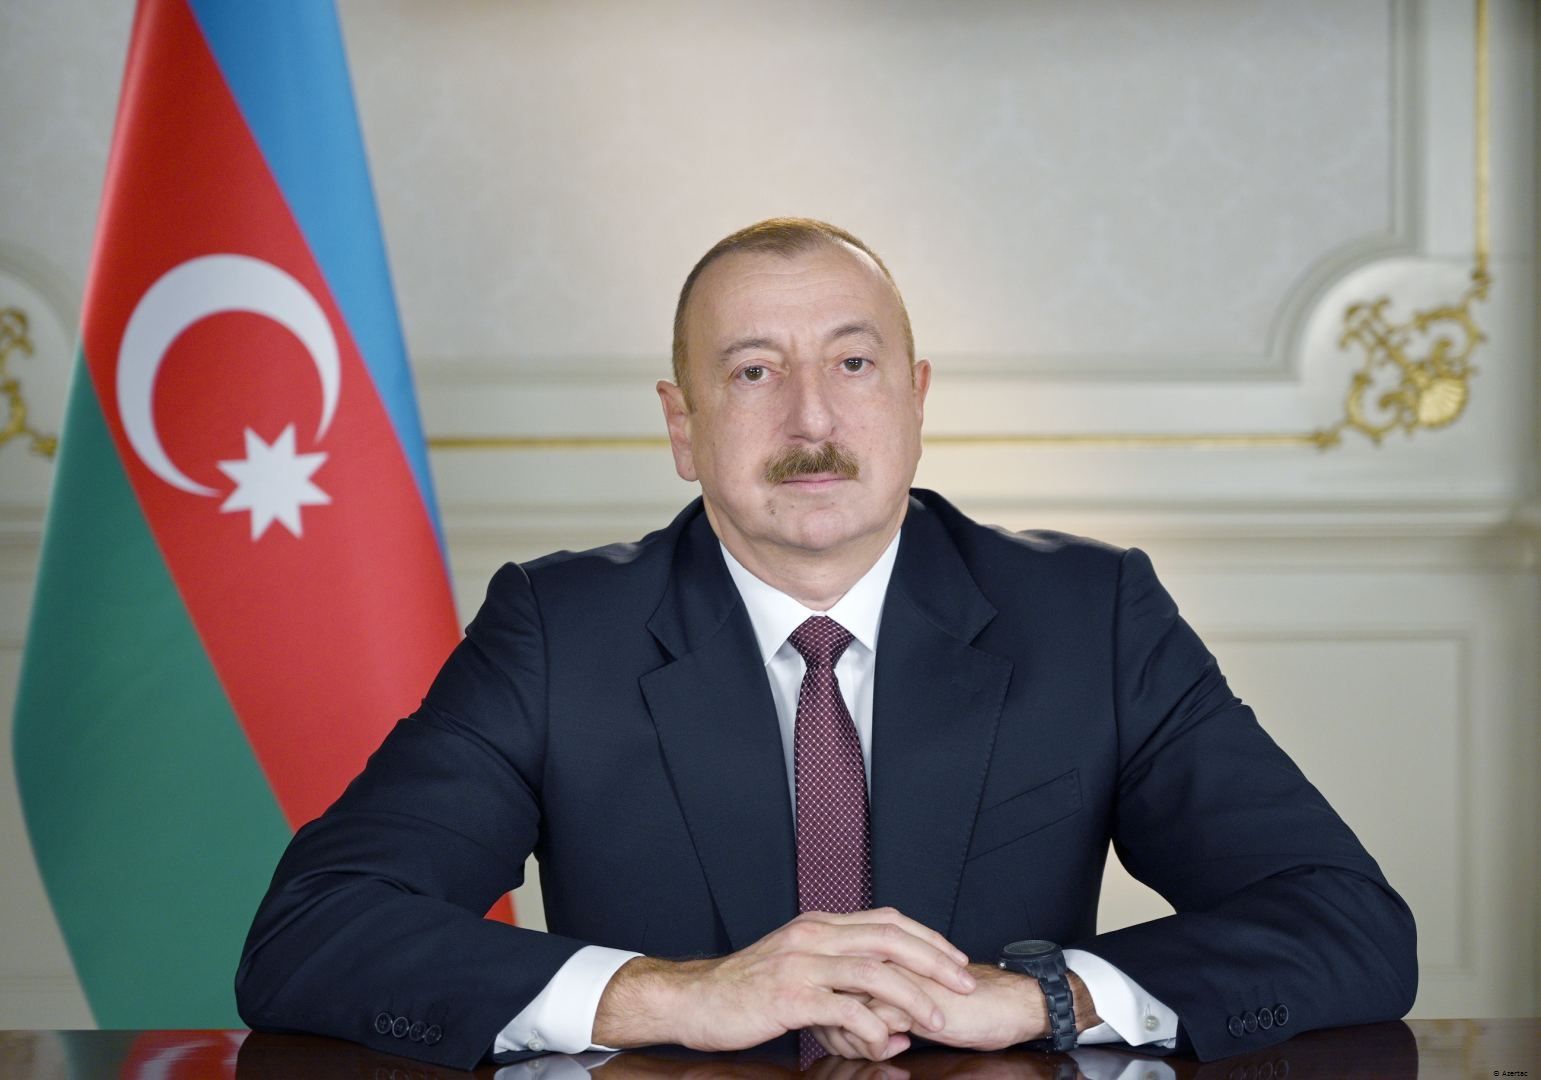 Le président Ilham Aliyev présente ses vœux à la reine Elizabeth II pour son 95e anniversaire